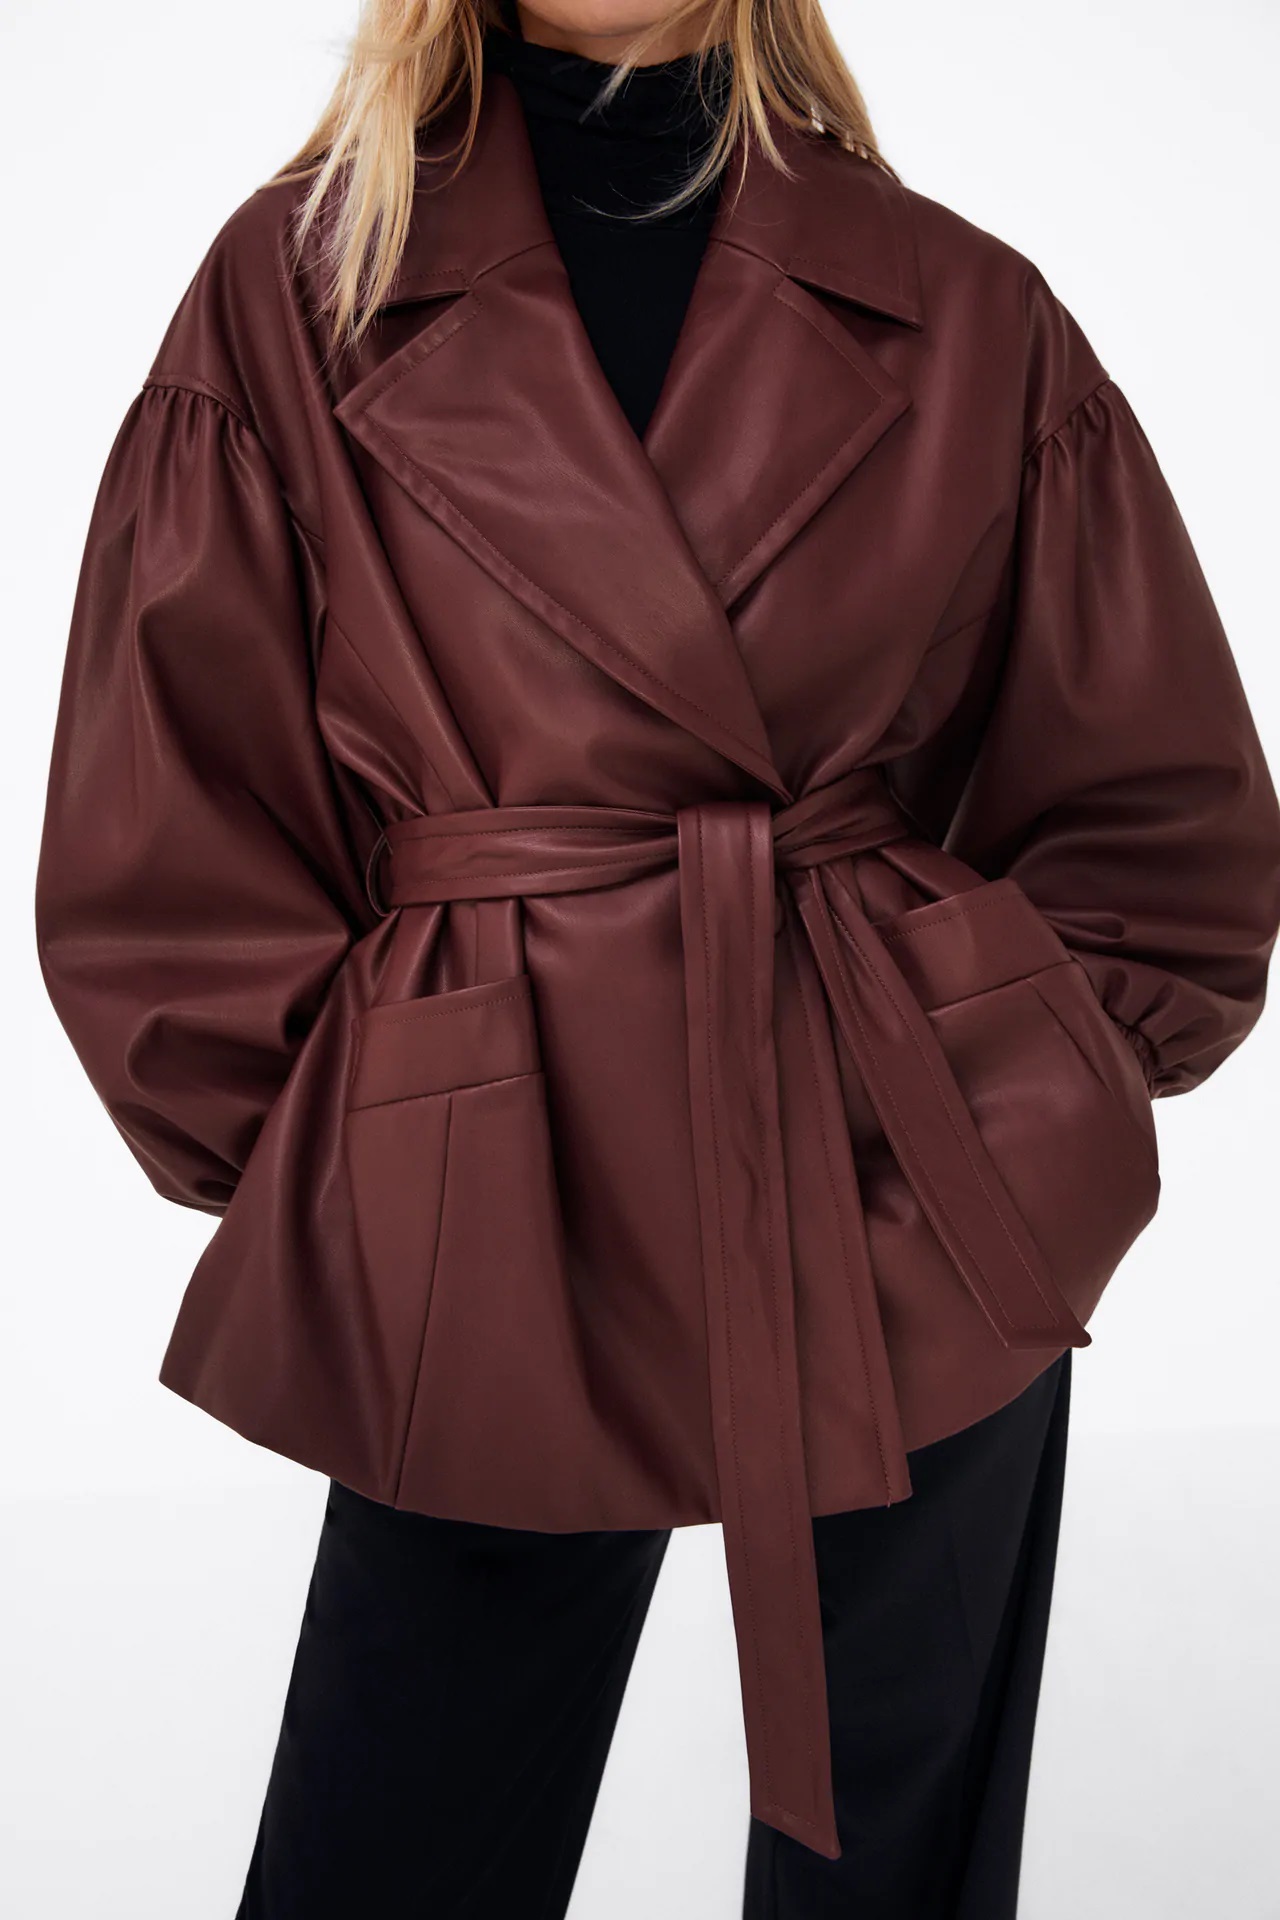 Zara: Busca por el armario o compra esta blazer ochentera de piel una de las prendas de la temporada